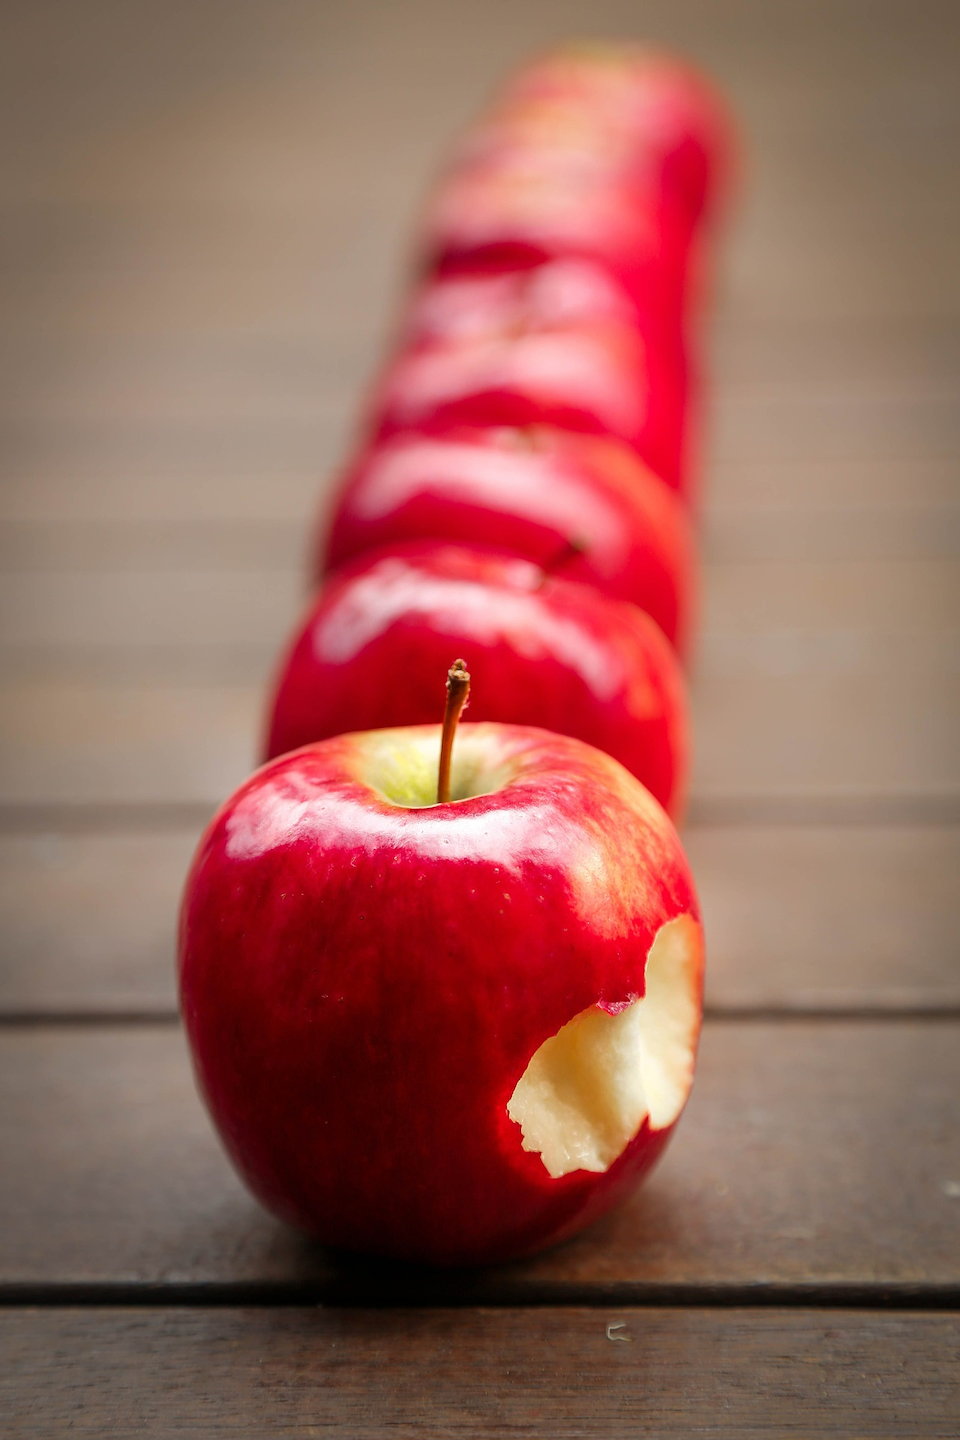 縦一列に並んだリンゴ